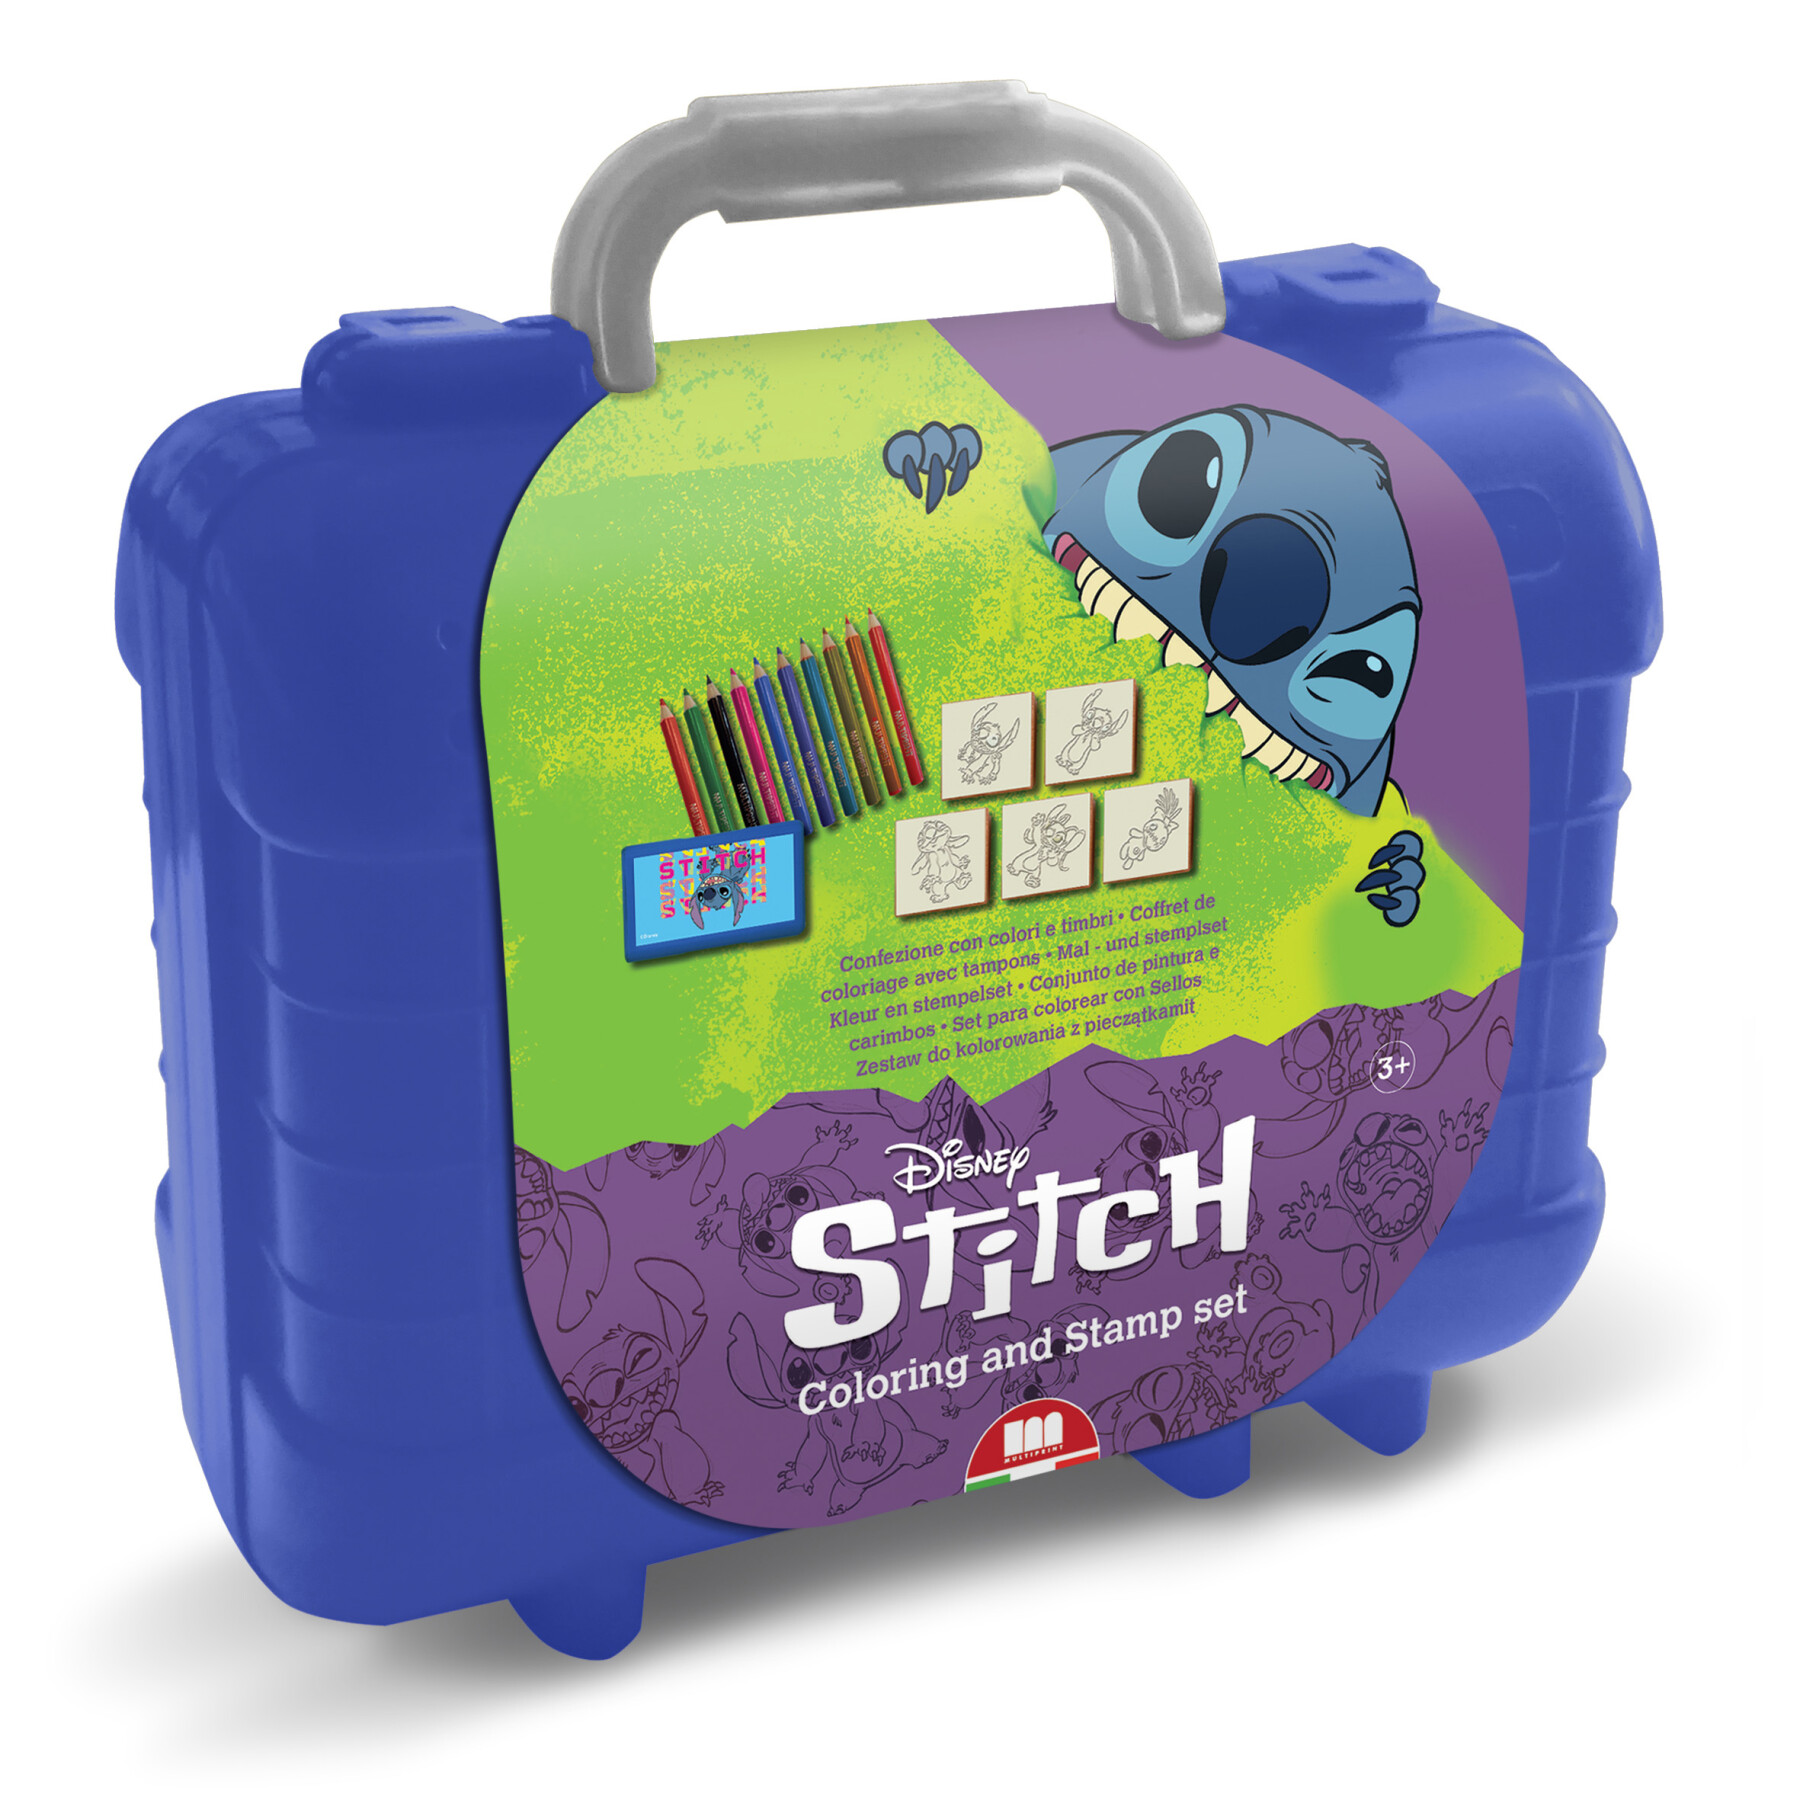 Multiprint - travel stitch - coloring set con timbri e colori - Toys Center